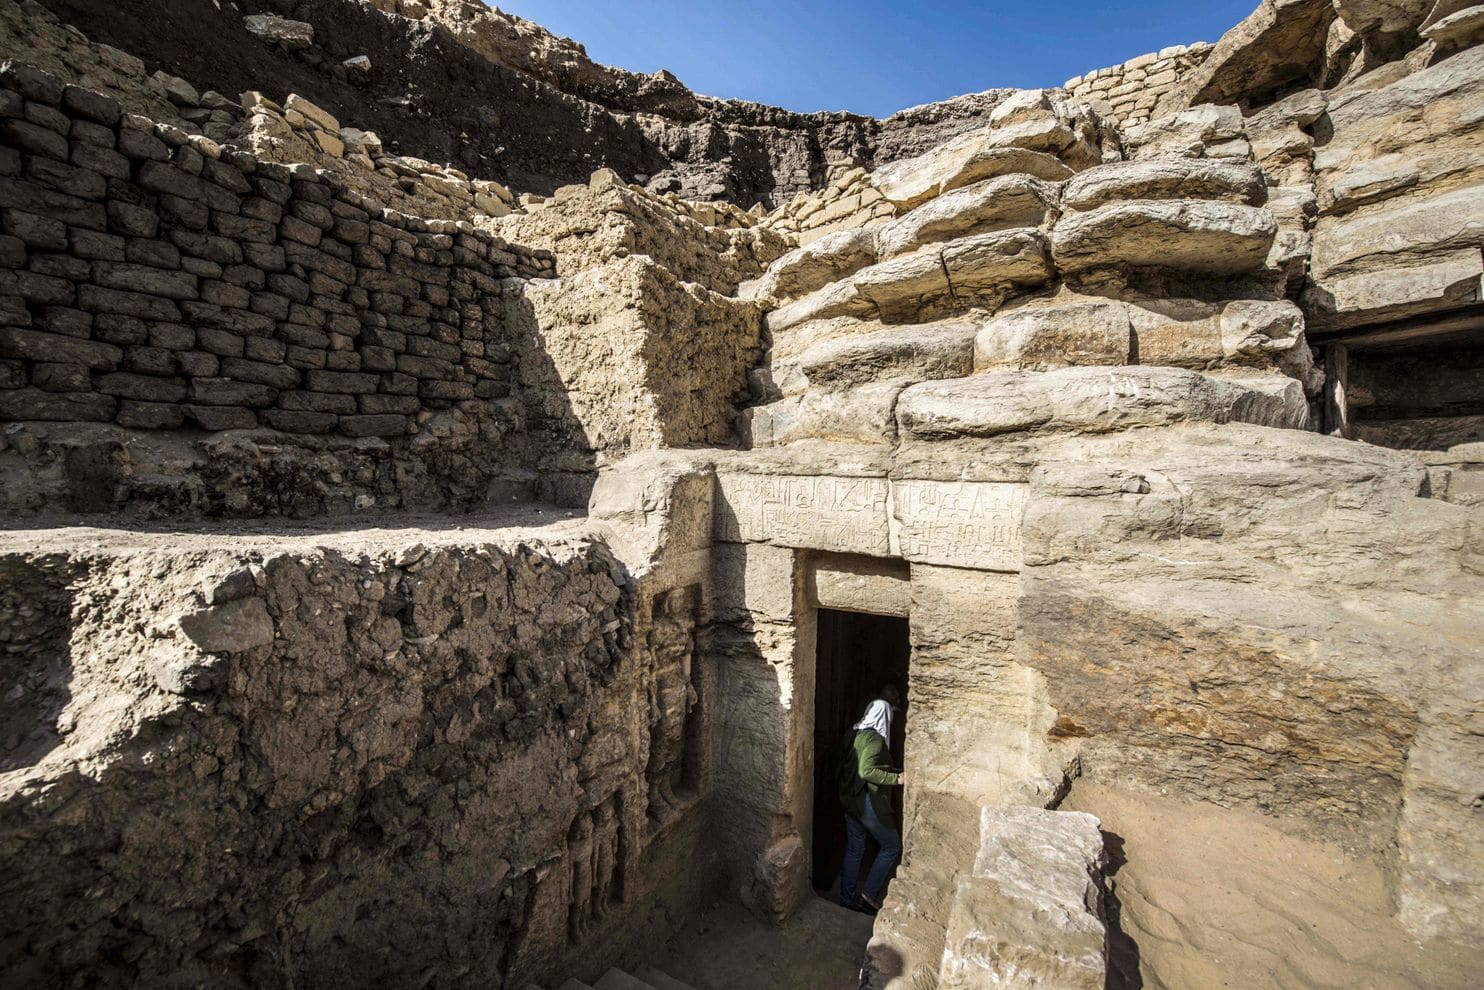 埃及又发现了一座4400年前的古墓,墓道打开瞬间,重现古墓丽影